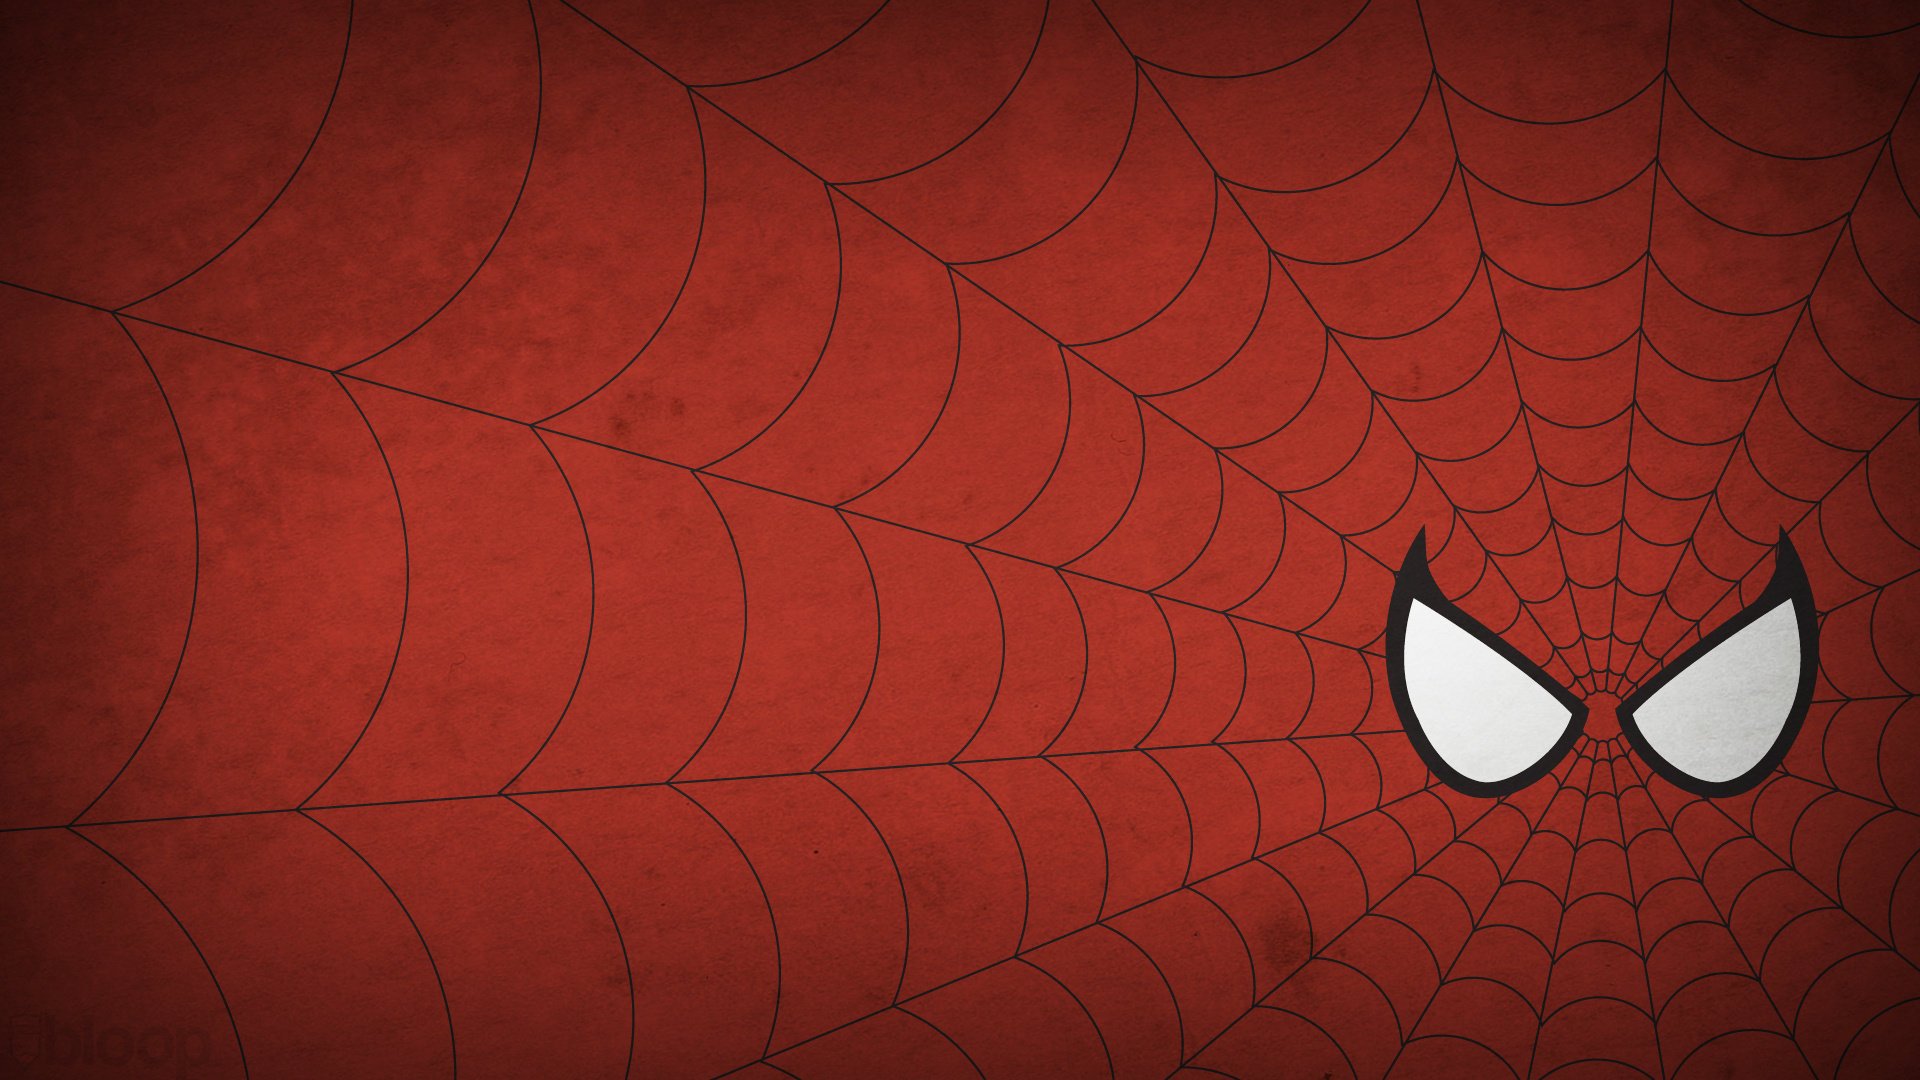 Spider man росомаха - обои в разделе Минимализм.